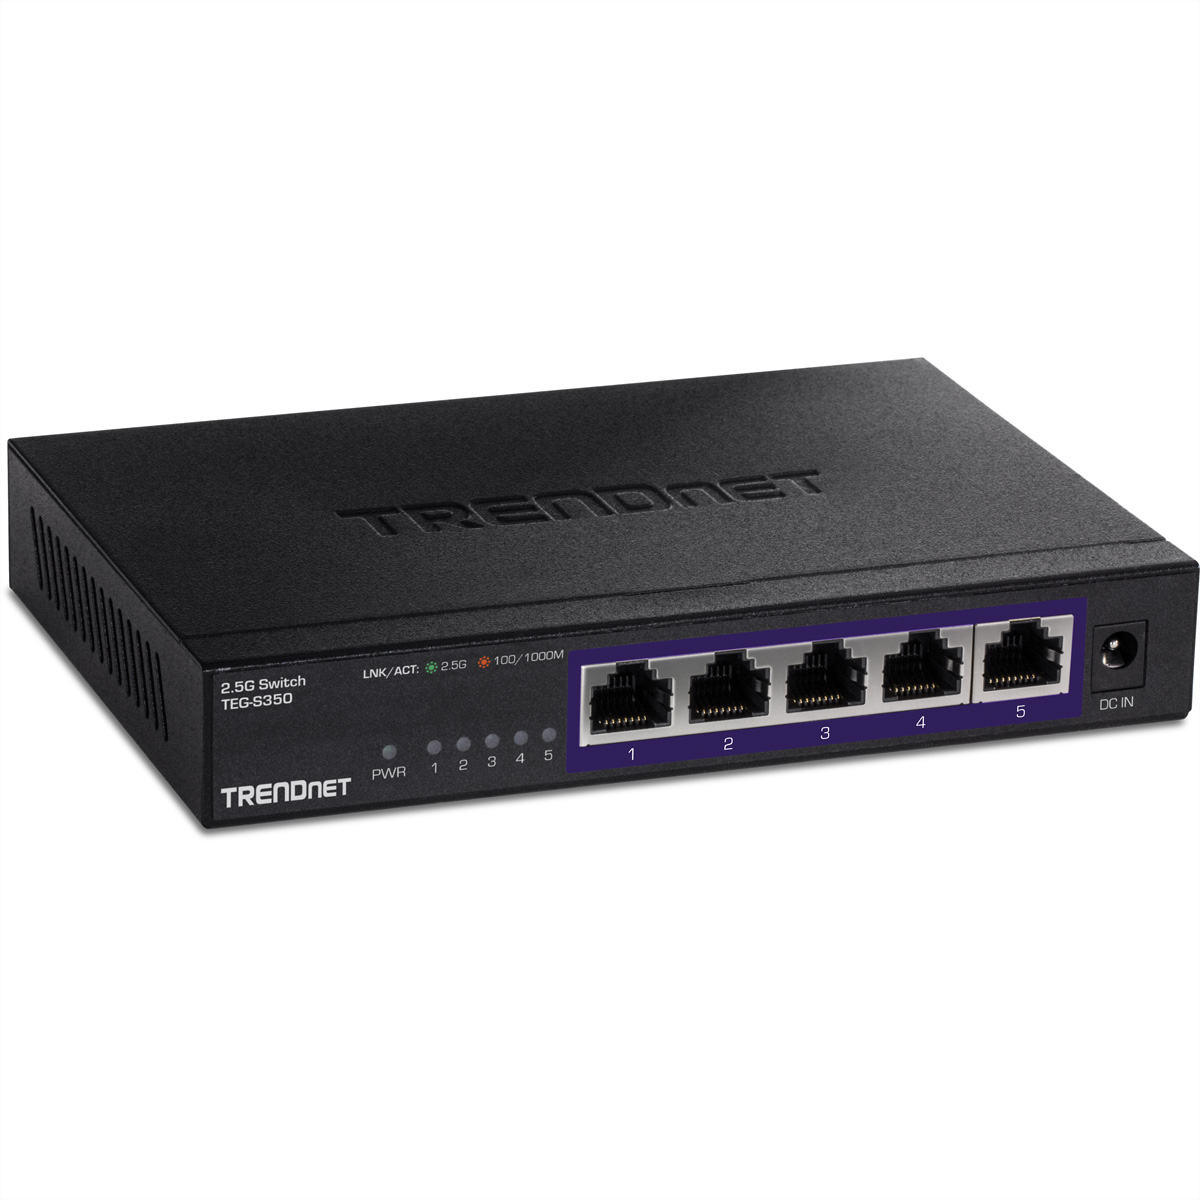 Ethernet 2.5G 5-Port TRENDNET TEG-S350 Gigabit Switch Switch